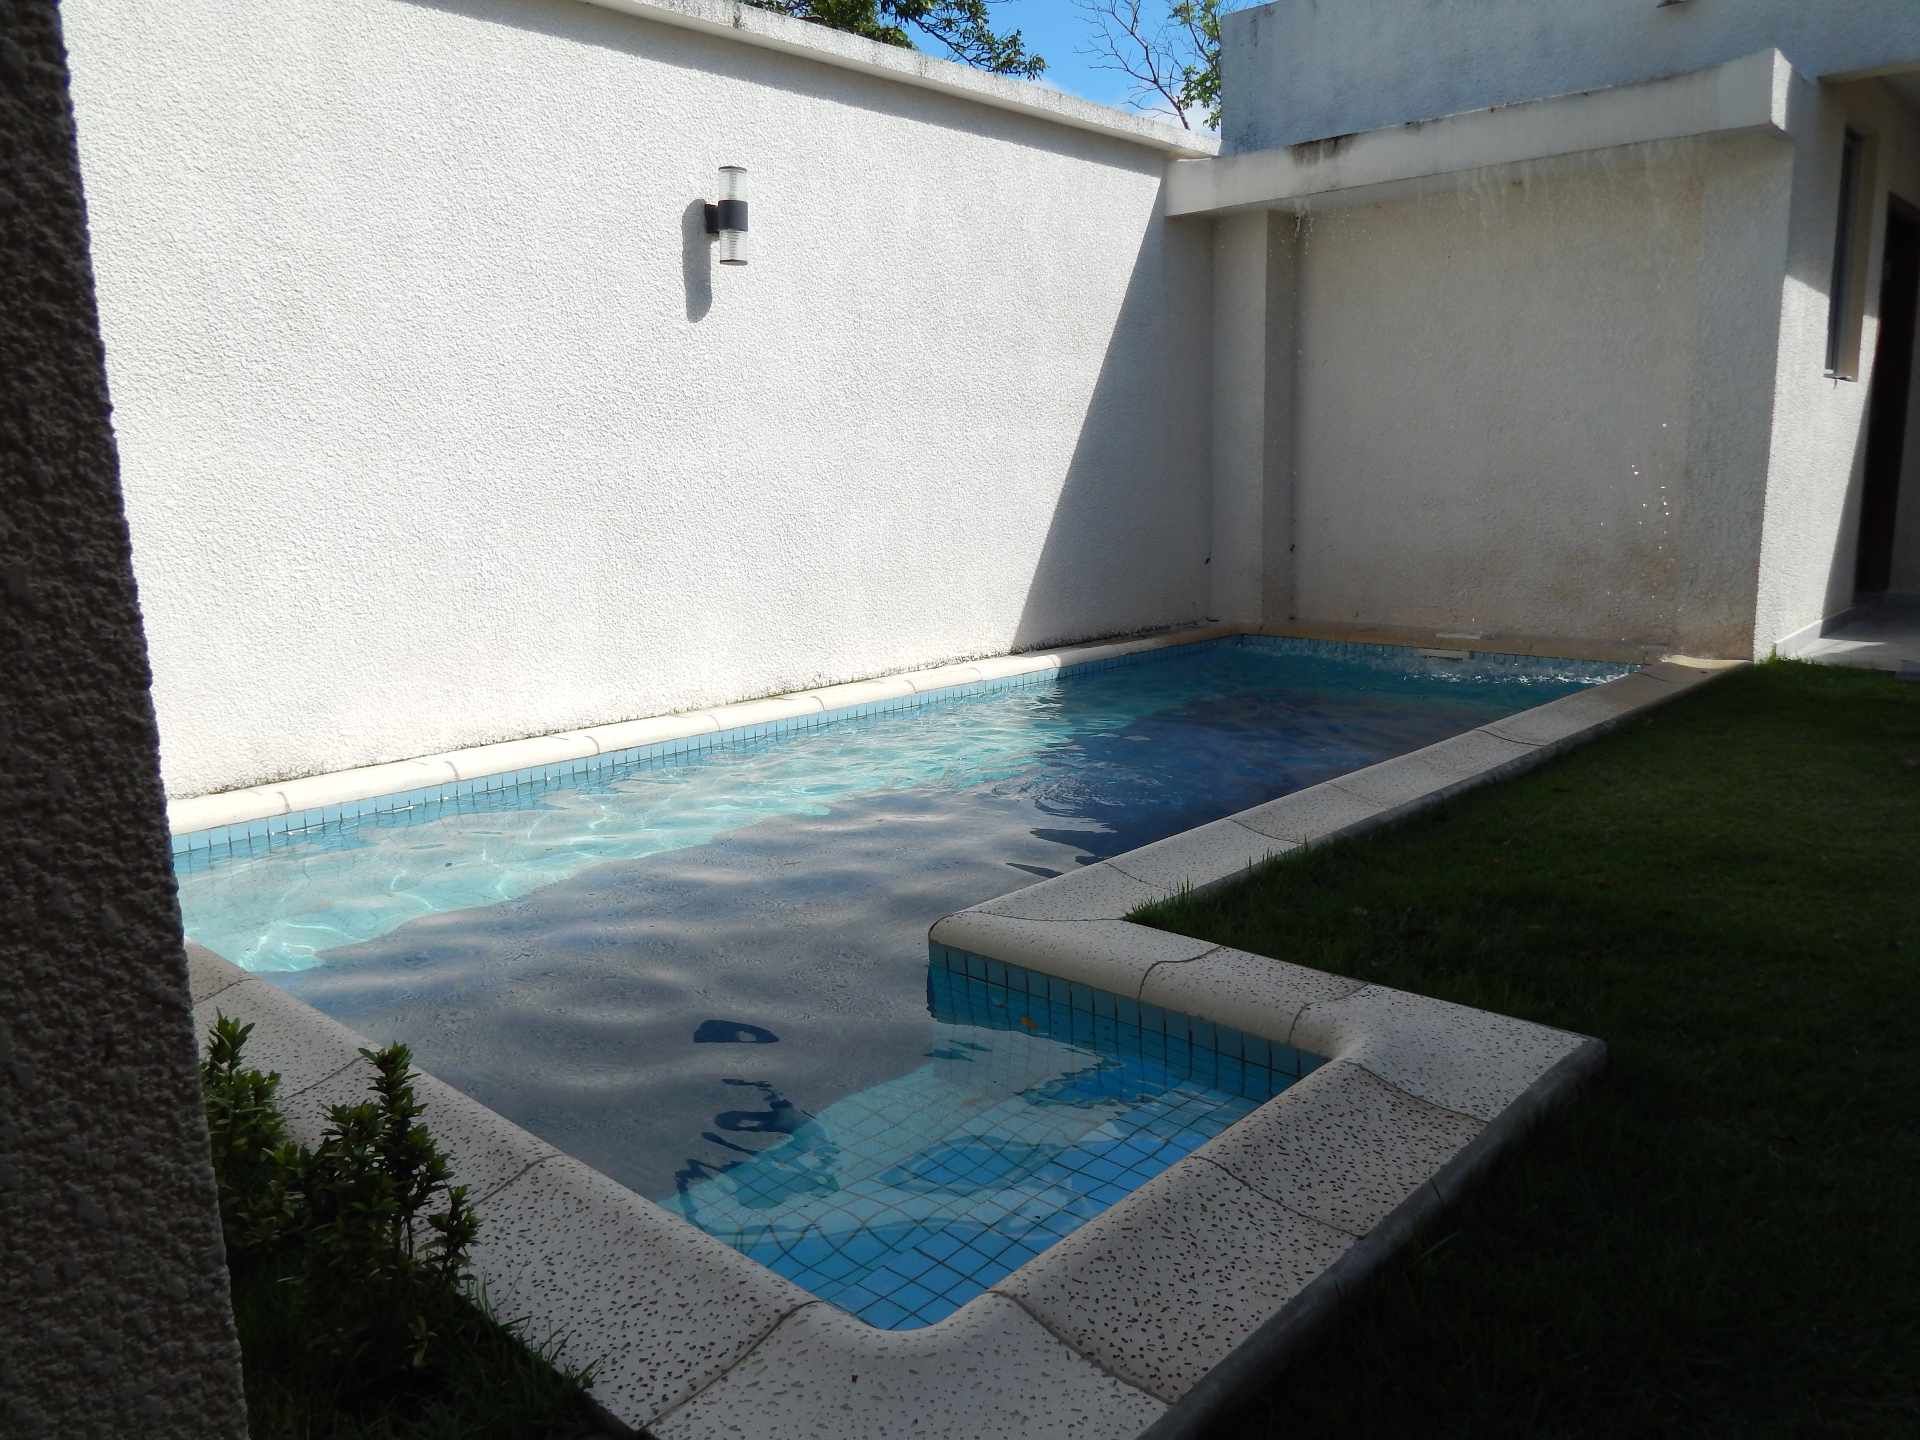 Casa en AlquilerCasa con piscina propia  en alquiler en el Urubo  Foto 3